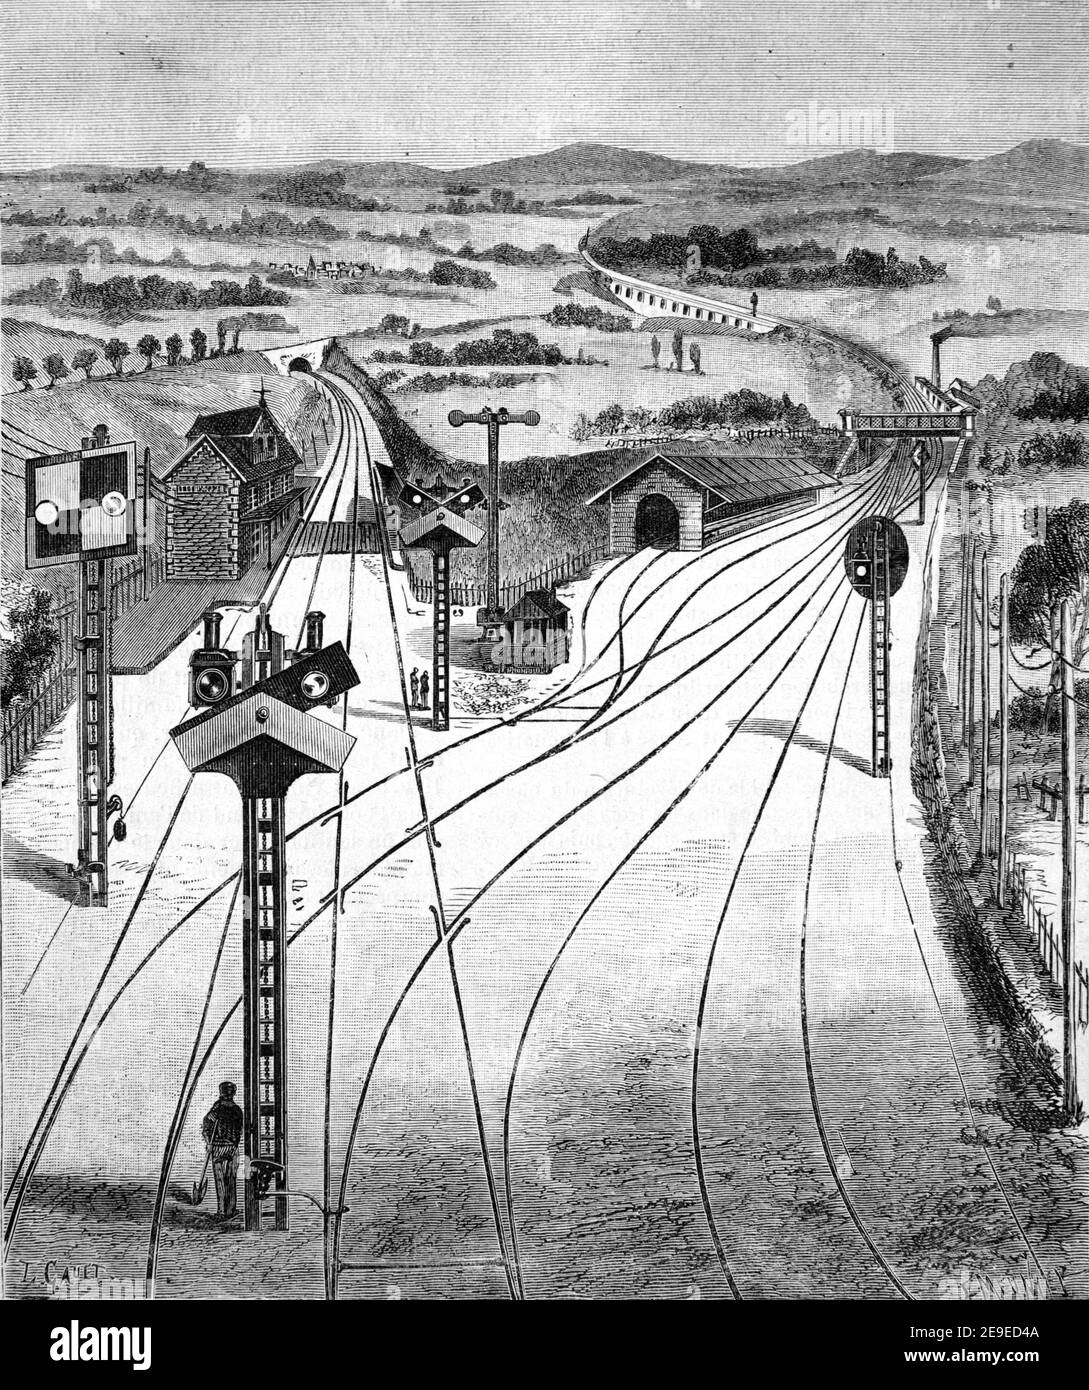 Linea ferroviaria Early Railroad Track o linee ferroviarie divergenti con Semaphore & Segnali luminosi che indicano l'interruttore ferroviario o ferroviario o il set di Punti 1910 Illustrazione o incisione d'epoca Foto Stock